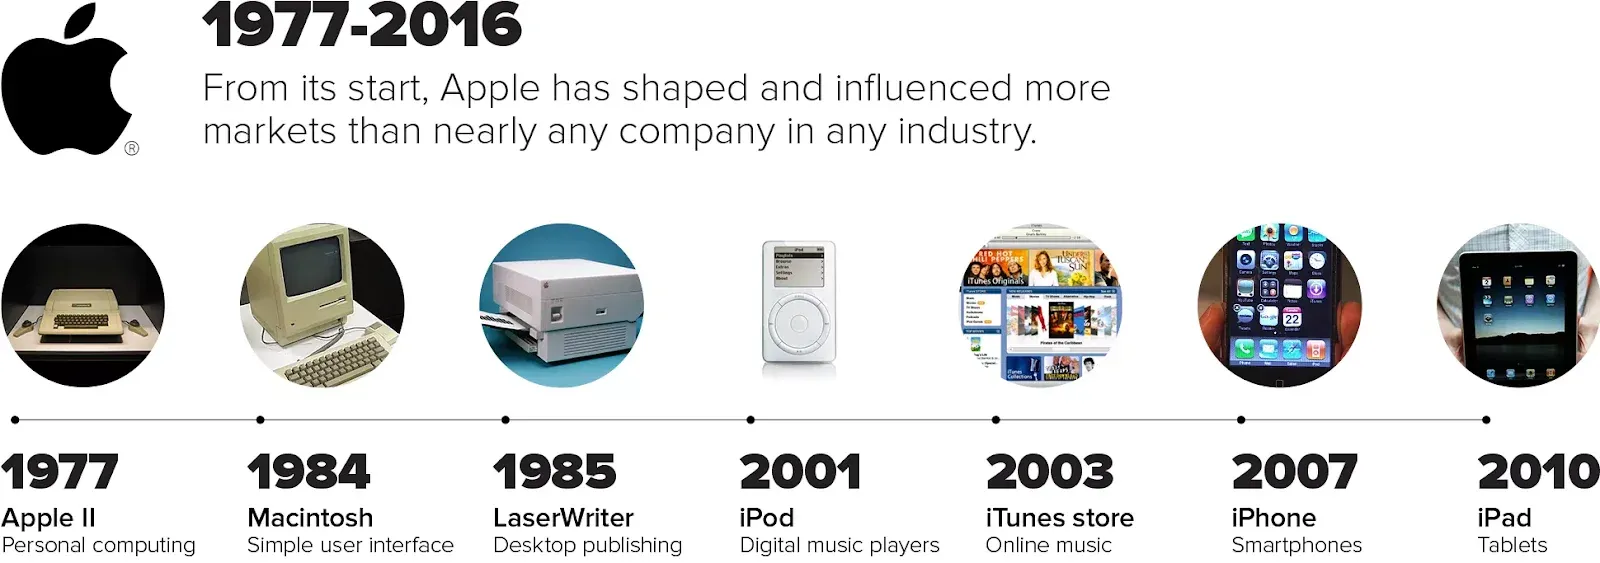 La línea de tiempo de la innovación de Apple | Fuente: cnet.com